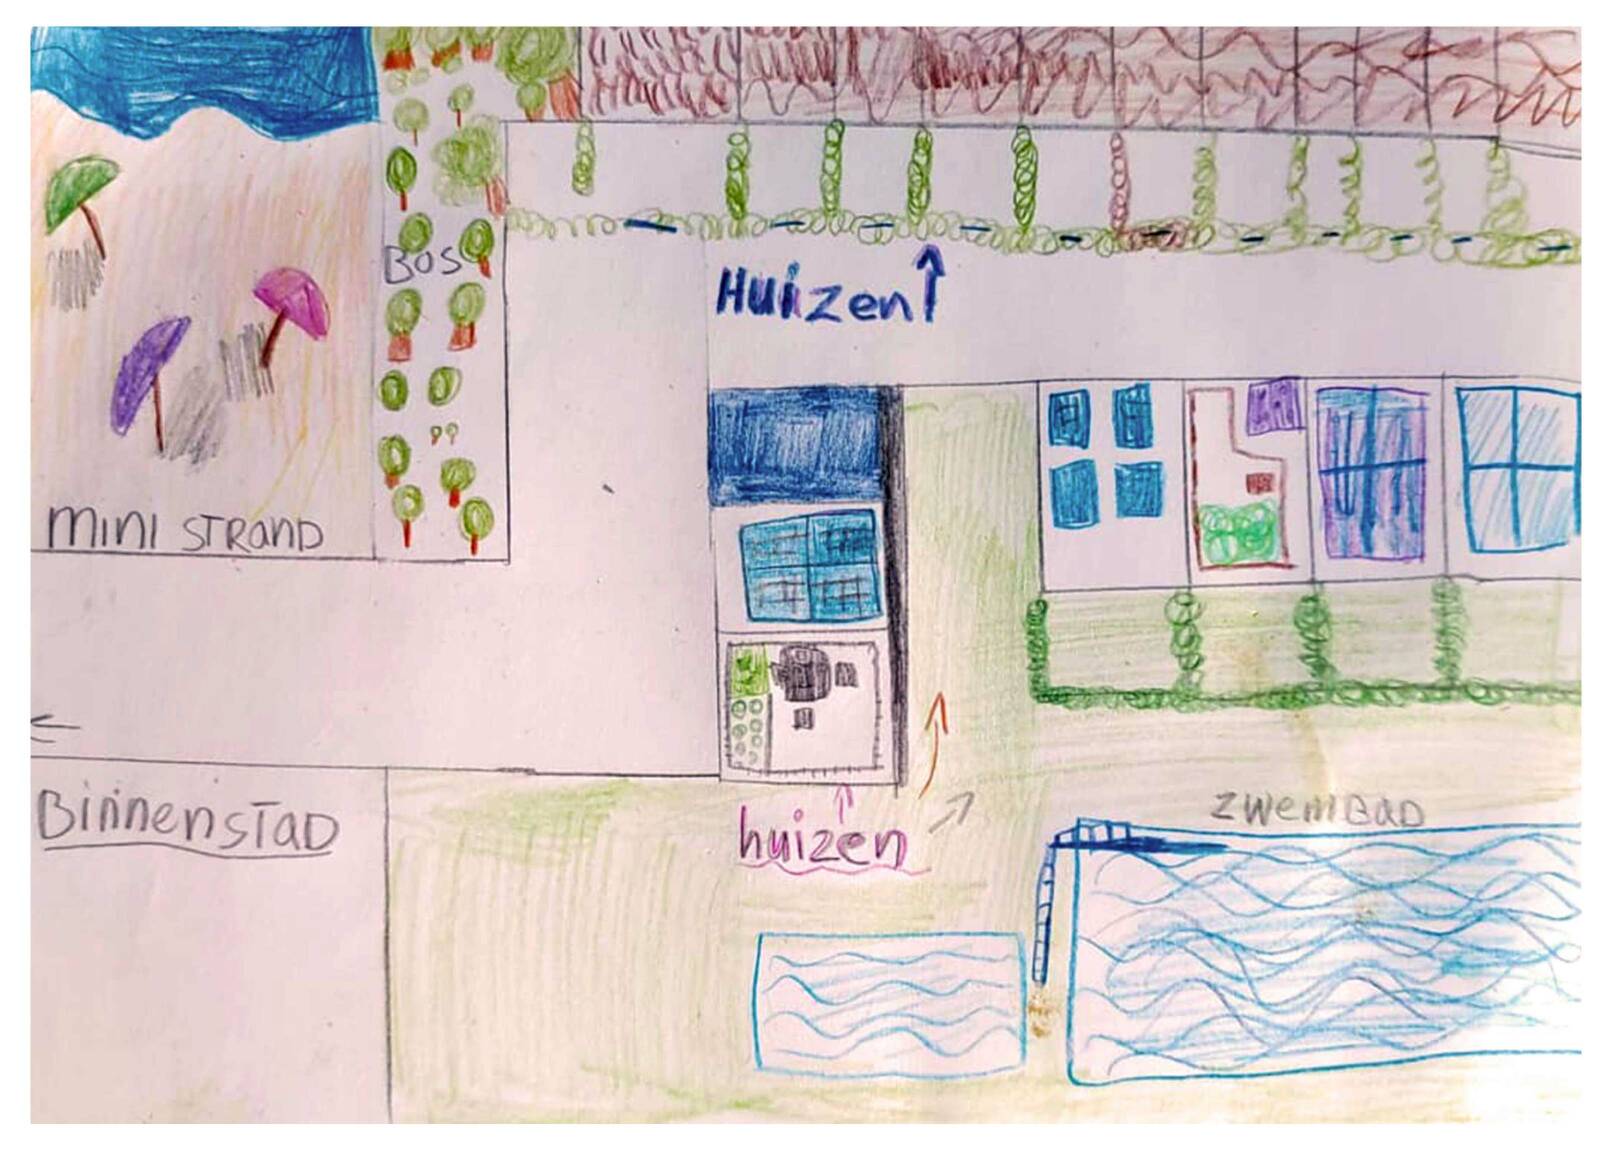 Kleurige kindertekening van een kaart met een straat, huizen en tuinen, een bos, een zwembad en een ‘ministrand’ met parasolletjes